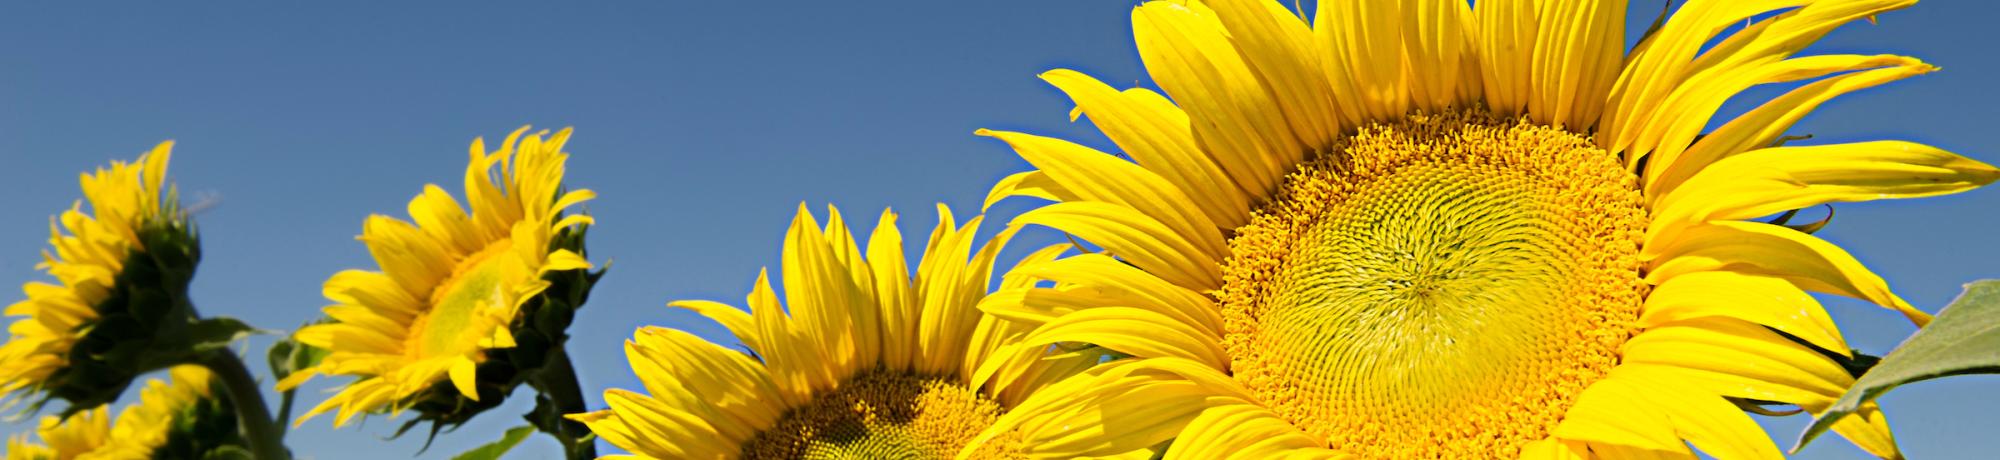 Close-up of three sunflowers